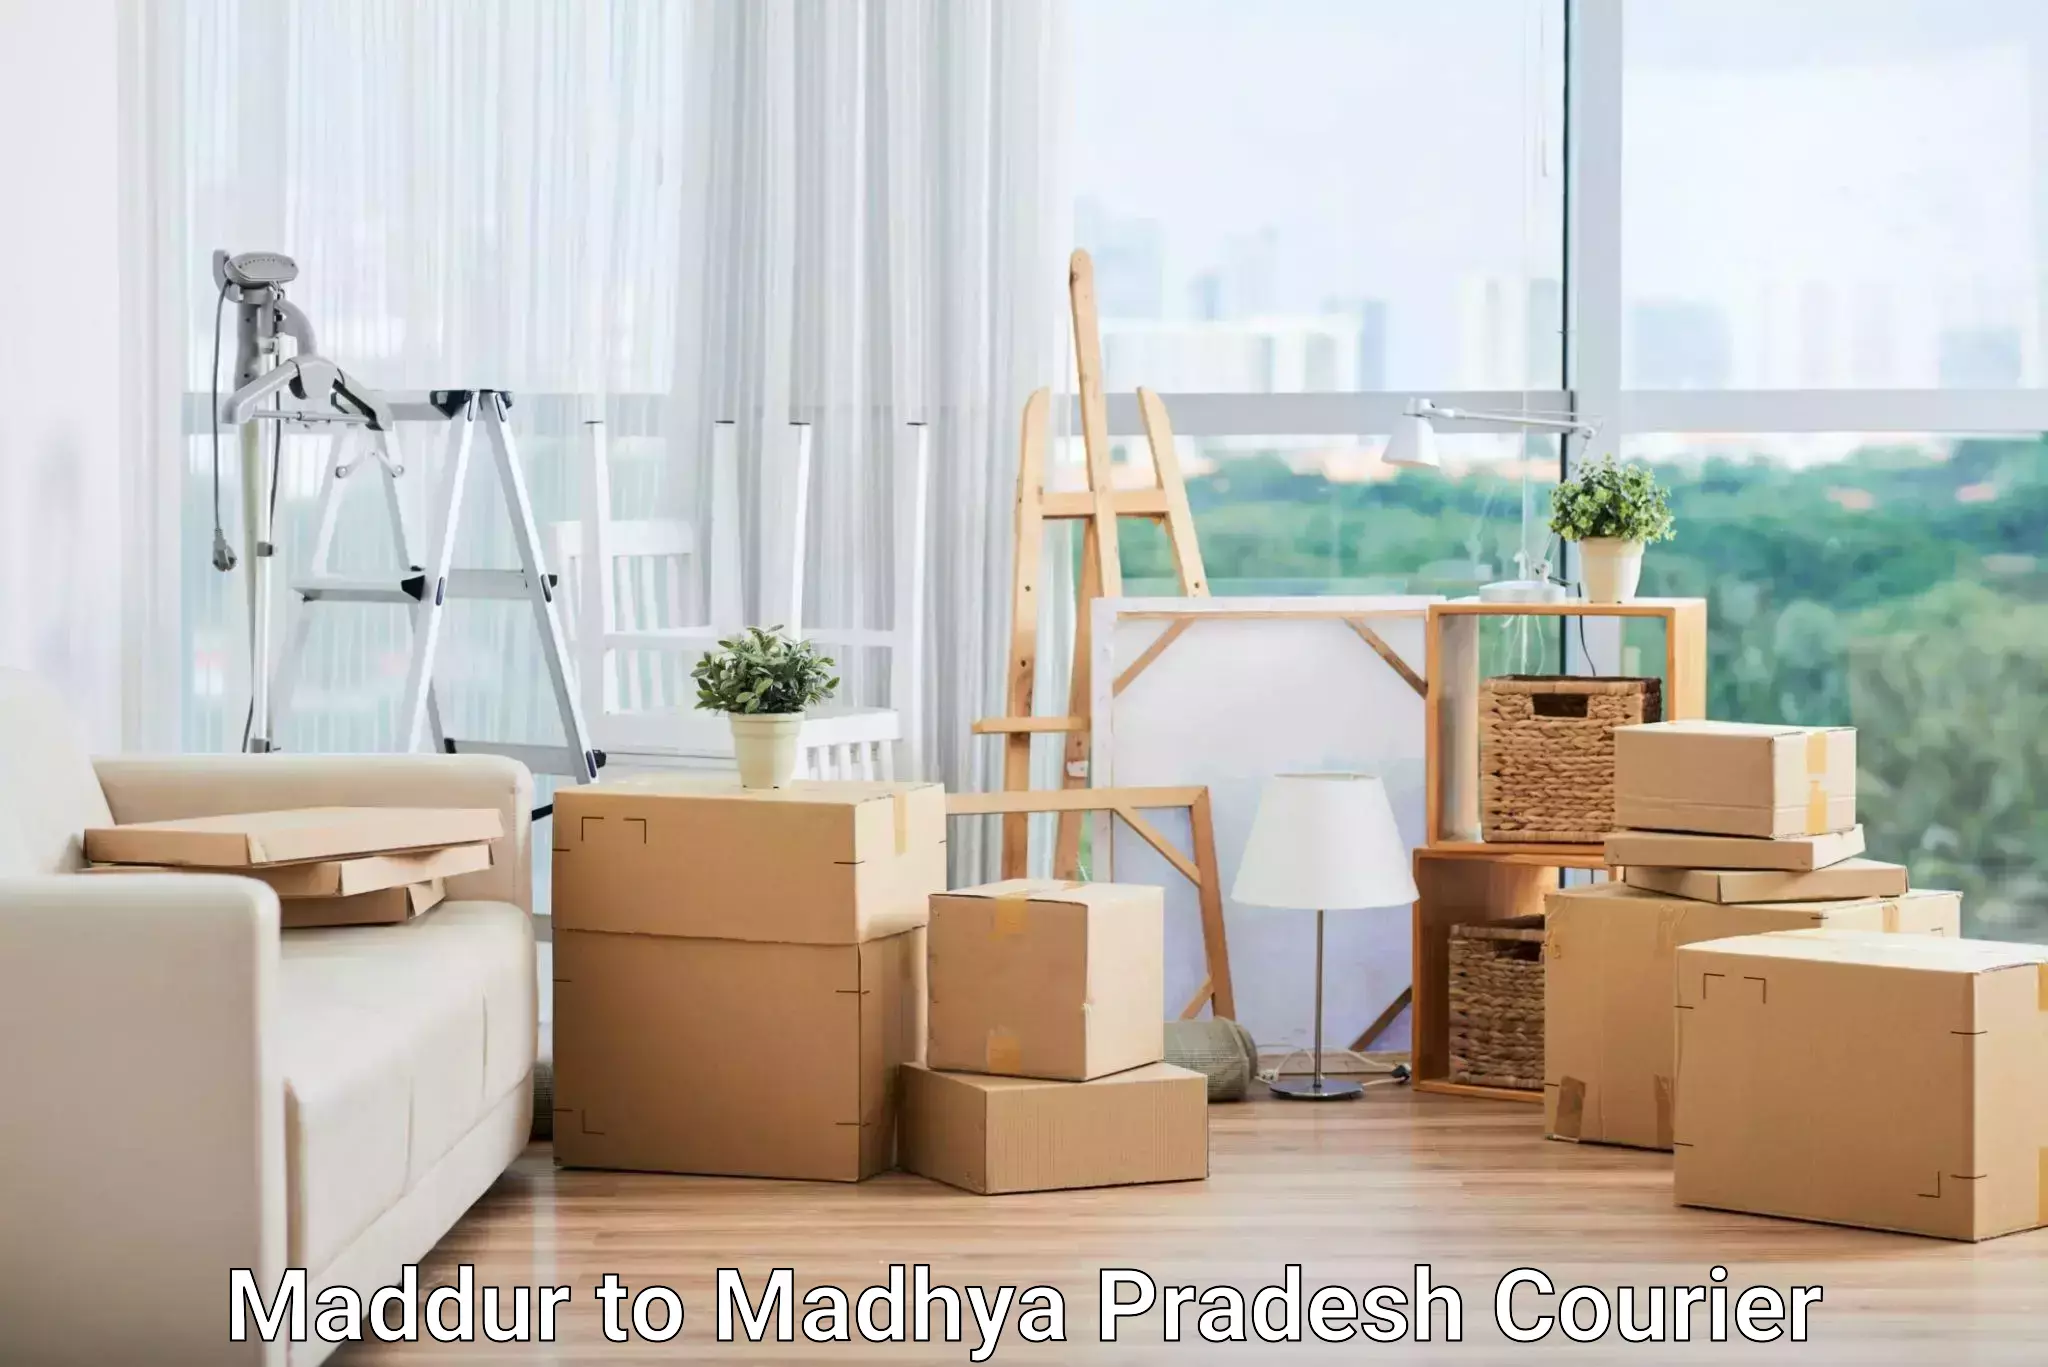 Advanced parcel tracking Maddur to Madhya Pradesh